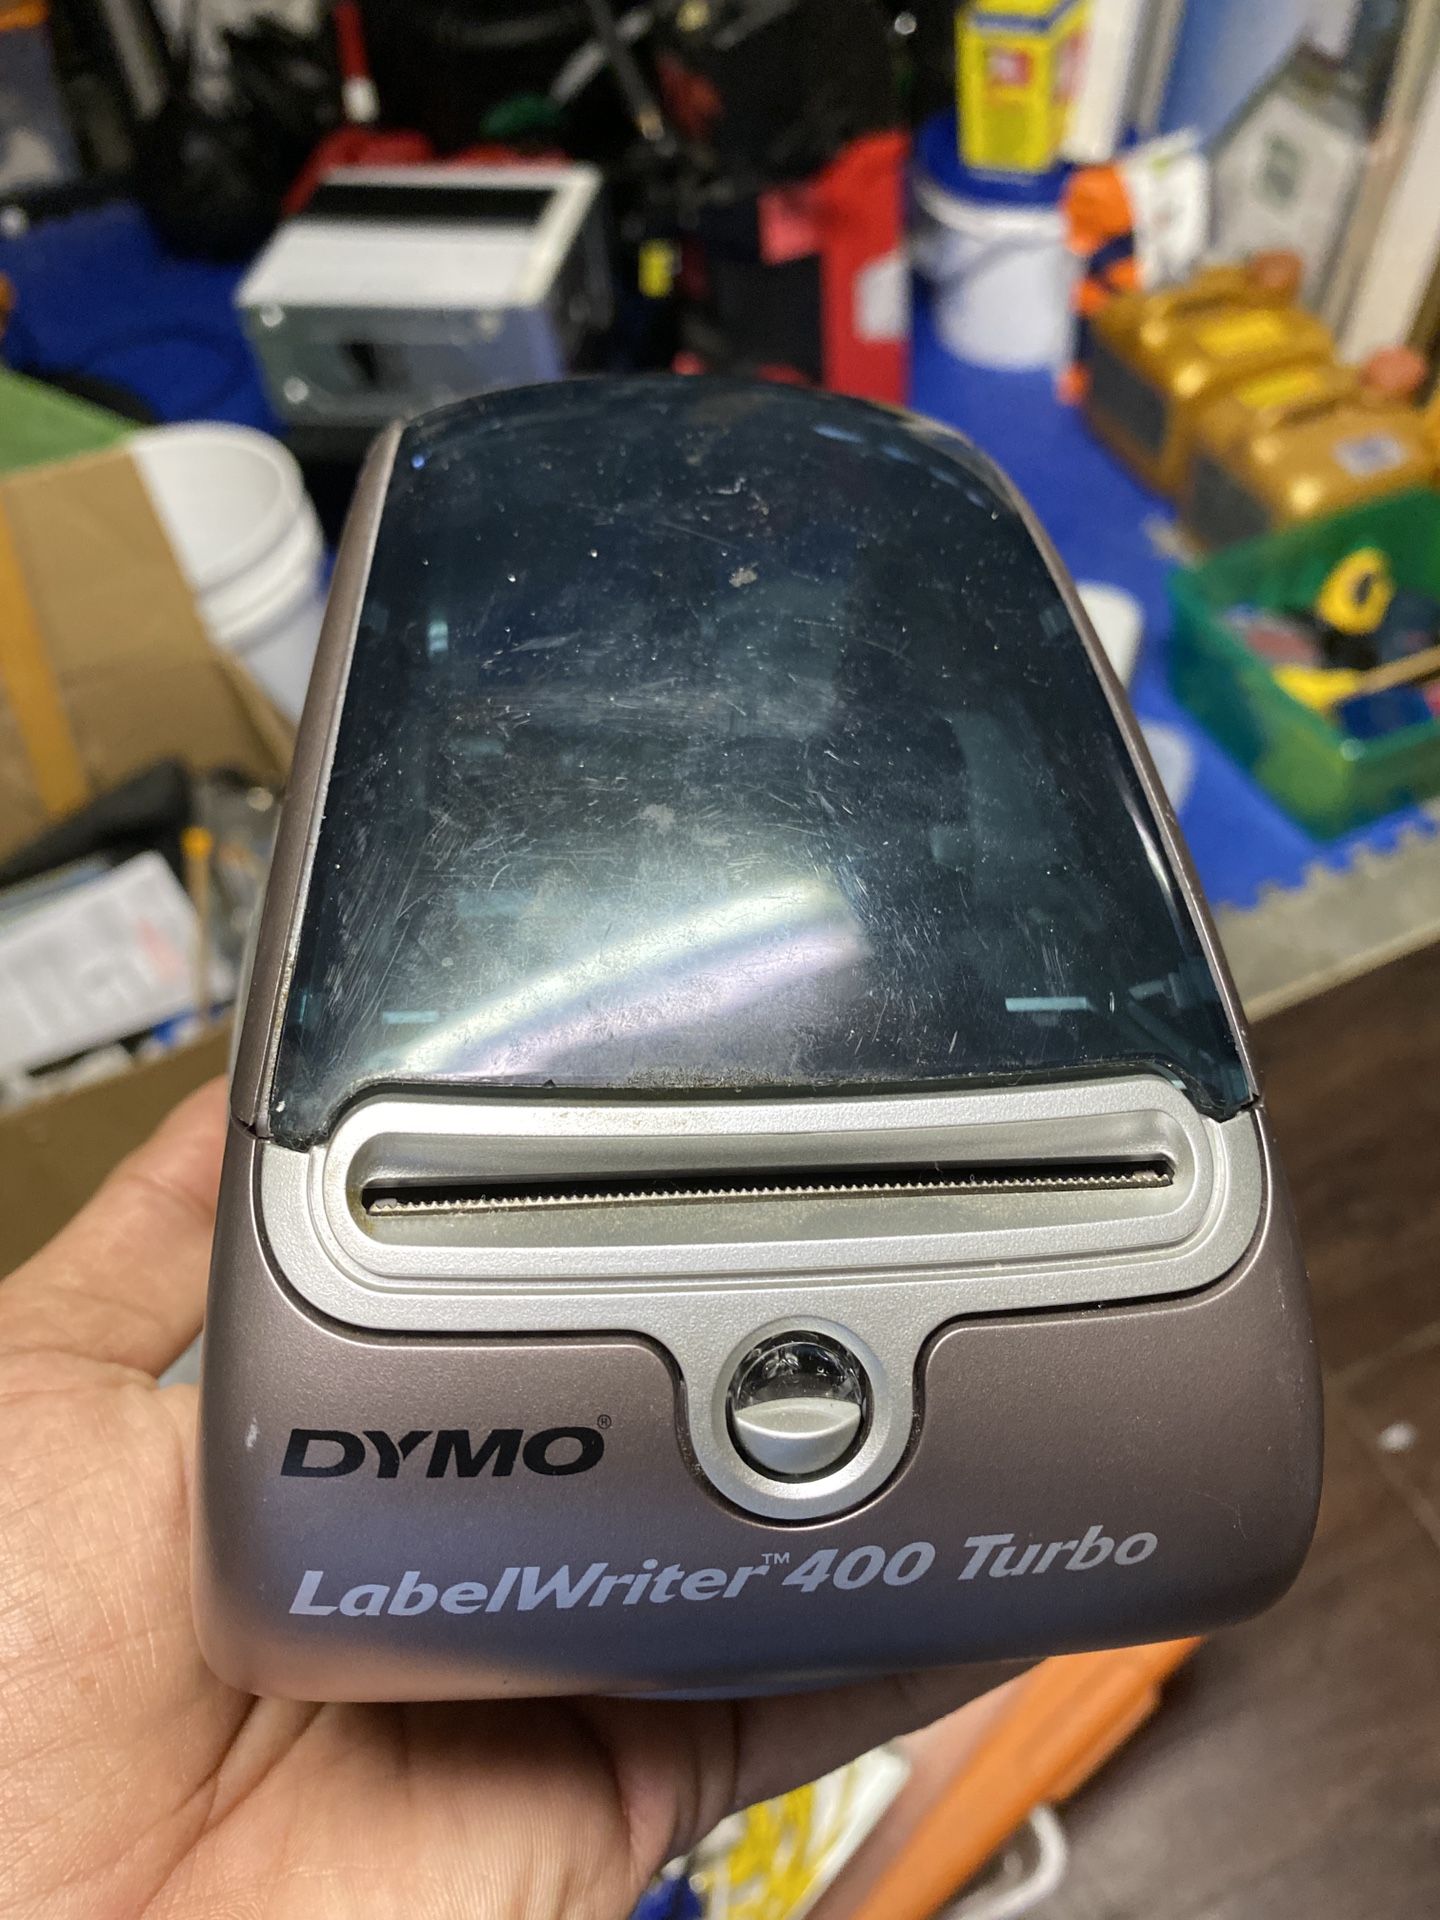 Dymo thermal printer - label writer 400 turbo